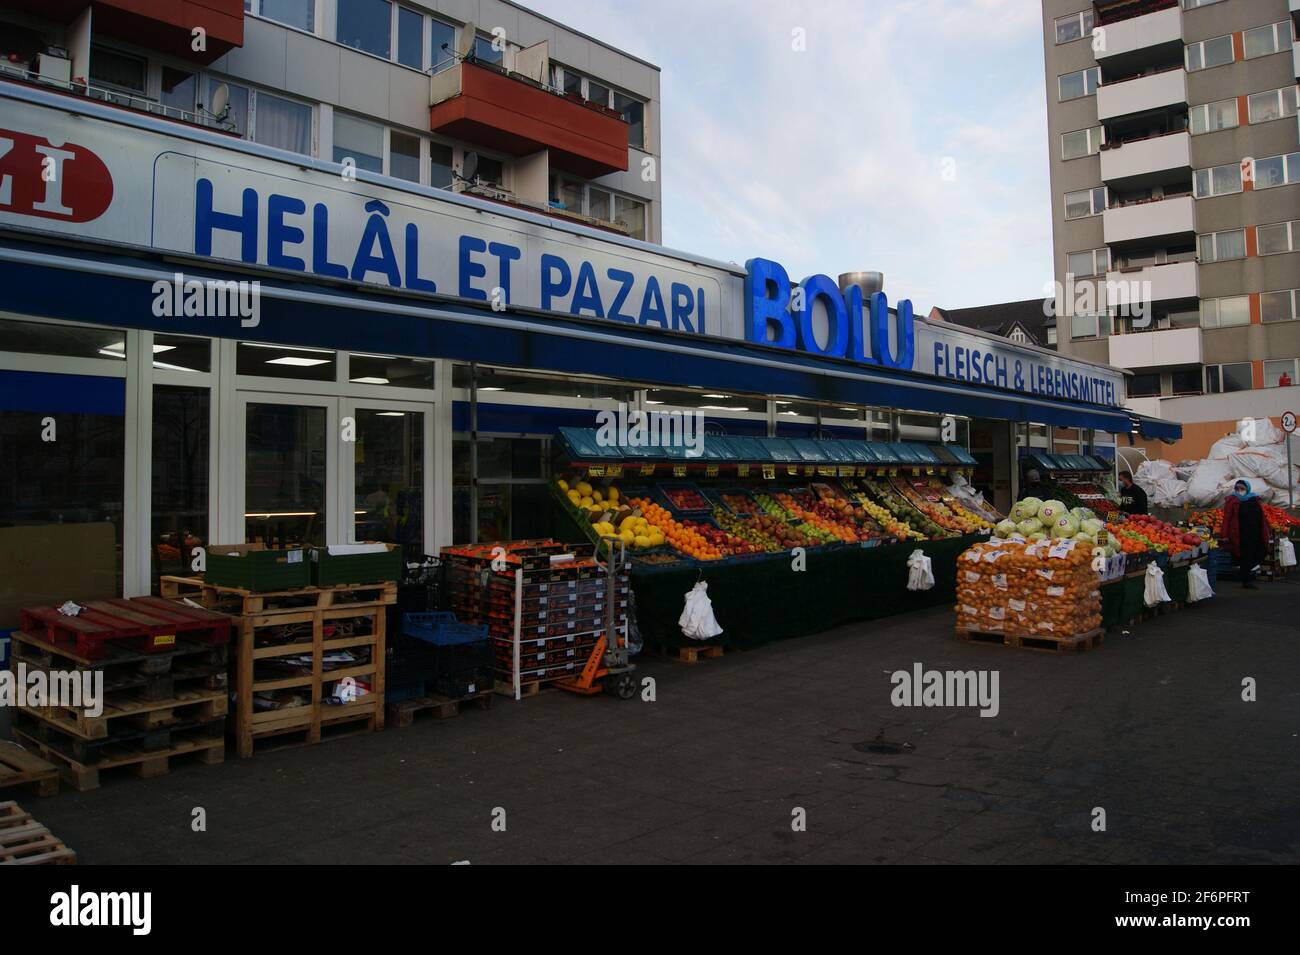 Eine Filiale der Supermarktkette Bolu in der Wilhelmstraße in Berlin-Spandau Stock Photo